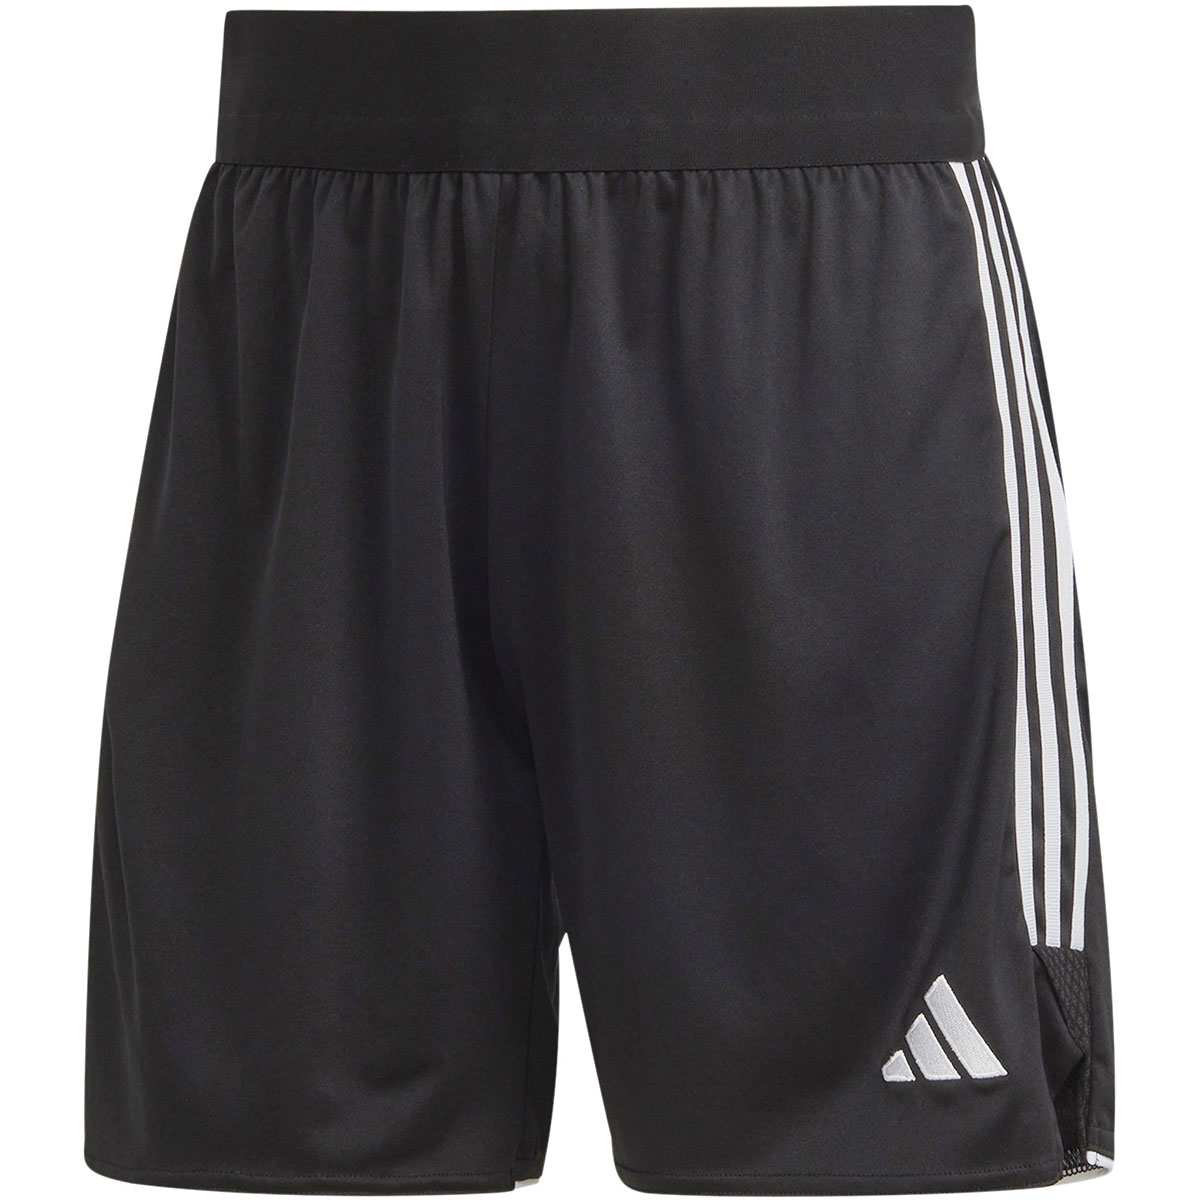 Adidas Damen Shorts Tiro 23 schwarz-weiß